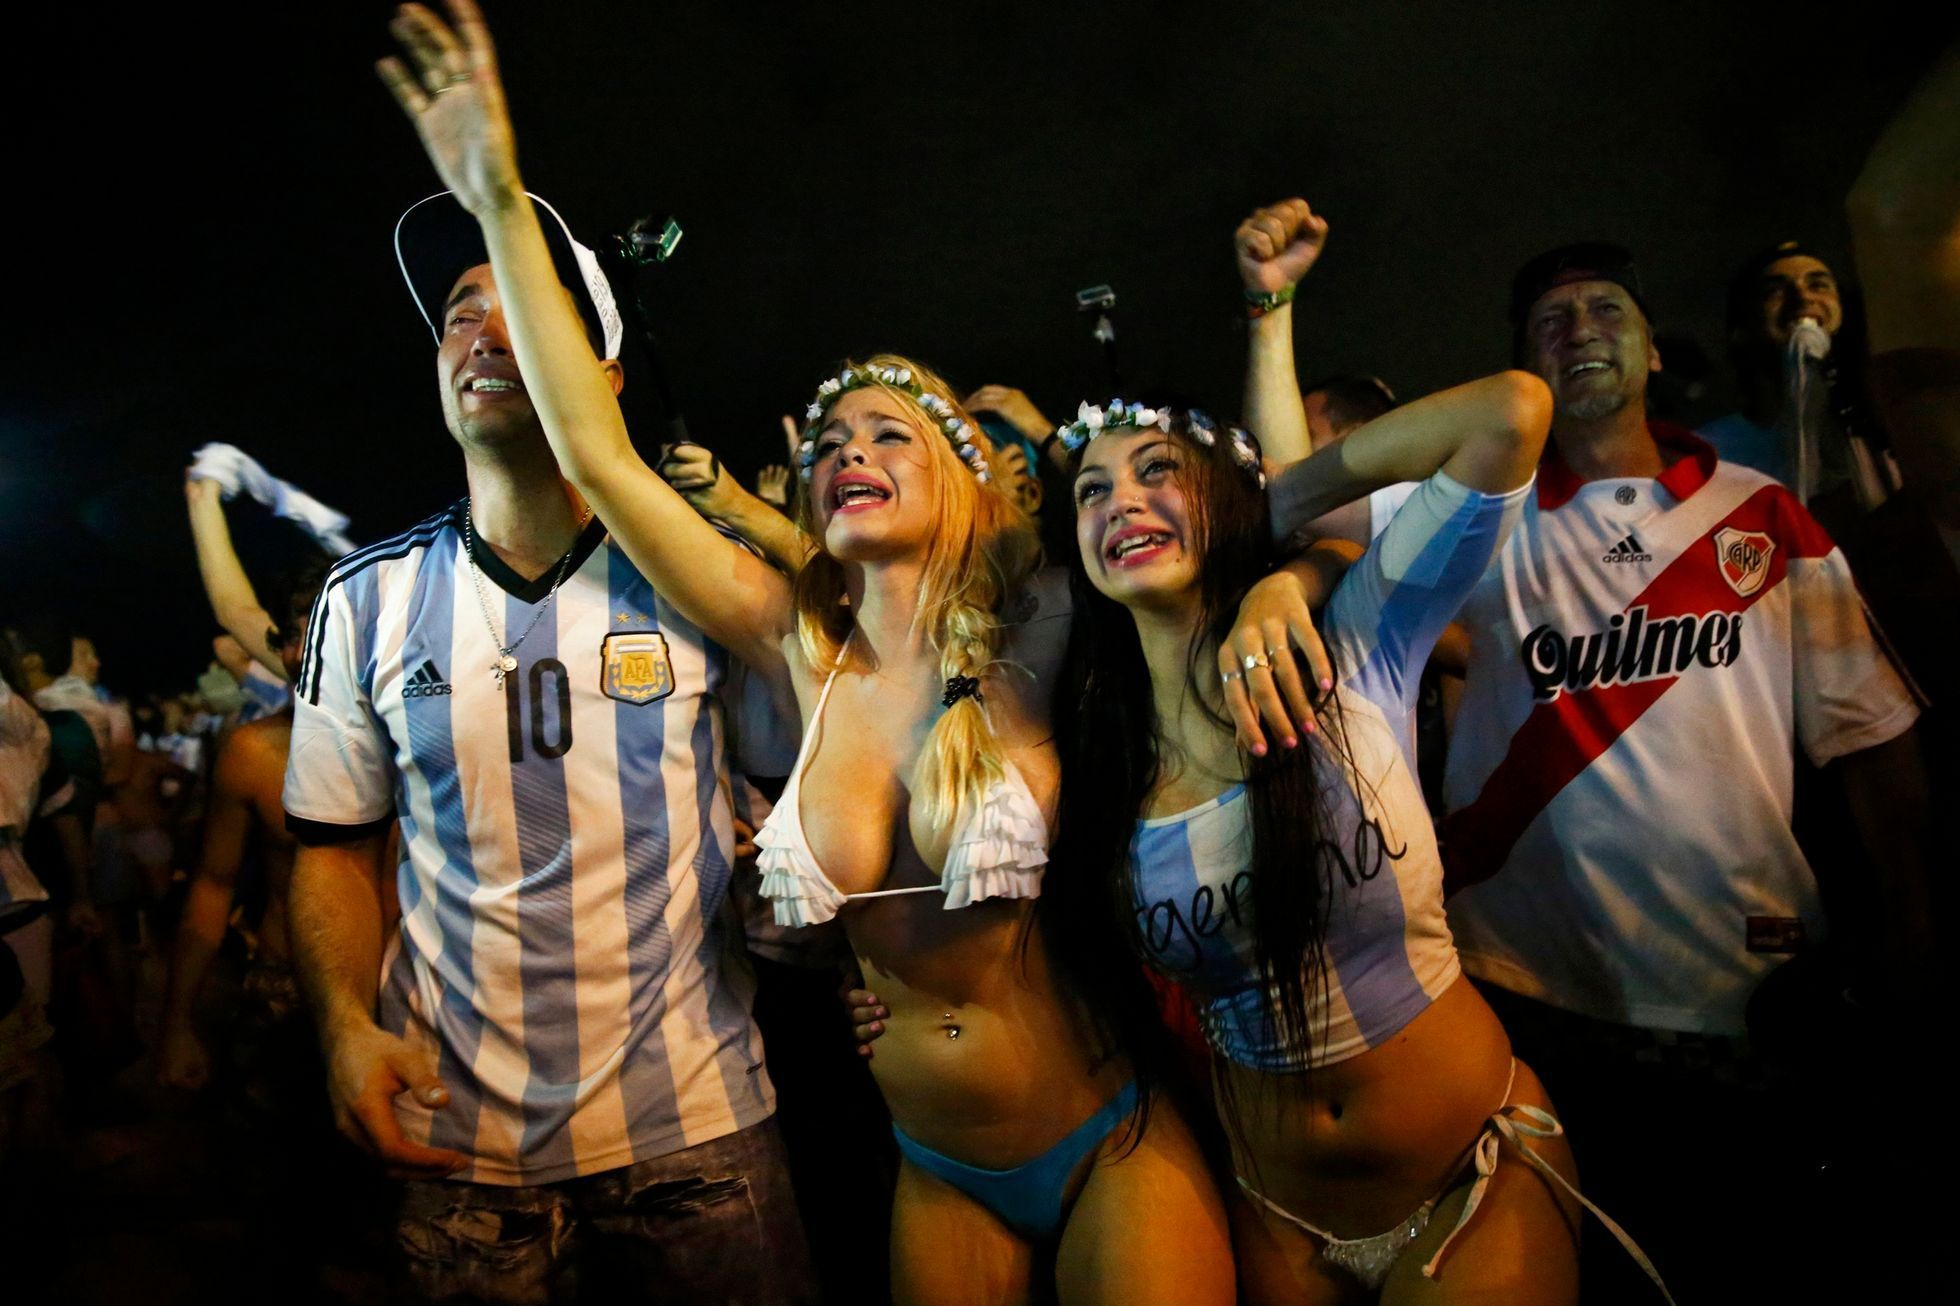 MS 2014, Argentina-Nizozemsko: fanynky Argentiny slaví postup do finále